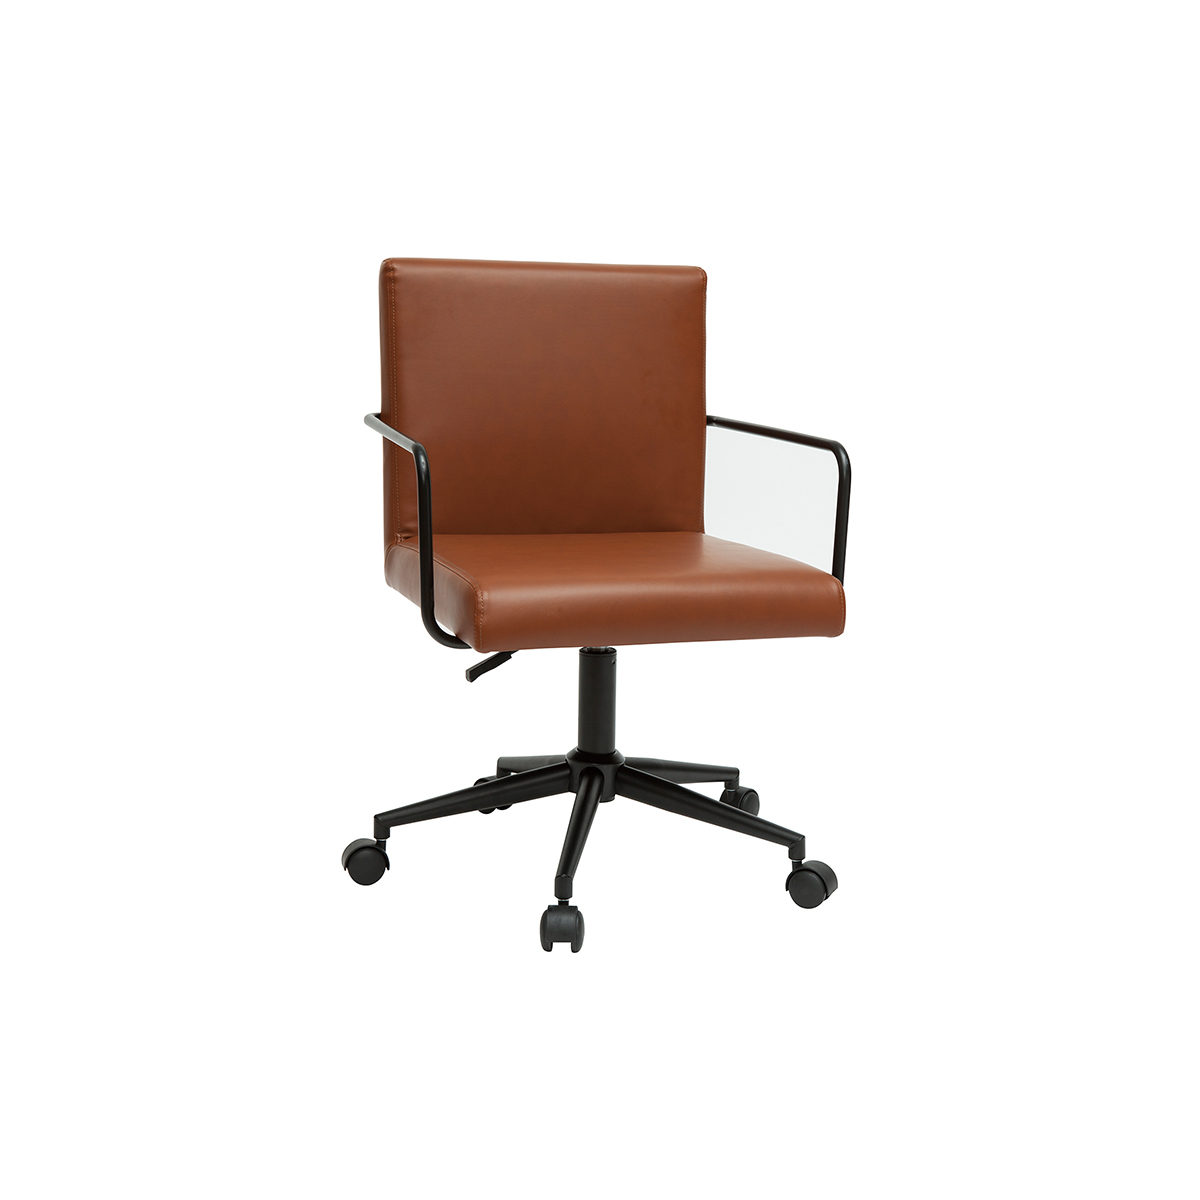 Chaise de bureau vintage en polyuréthane marron et métal noir FLOKI vue1